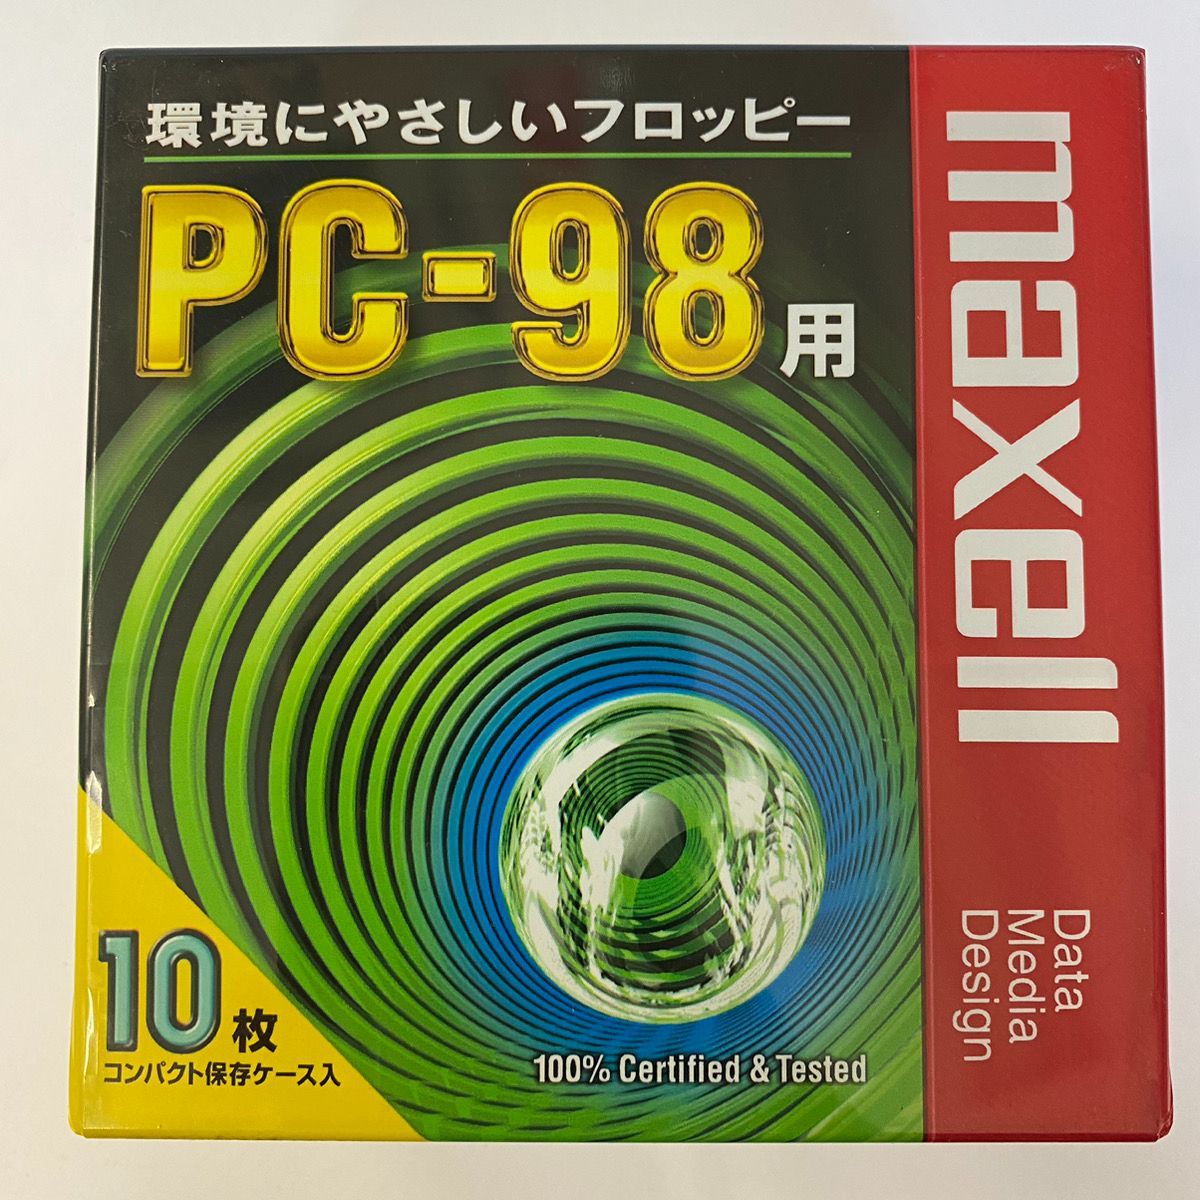 3.5インチ PC98 プロテクト解除コピーツール